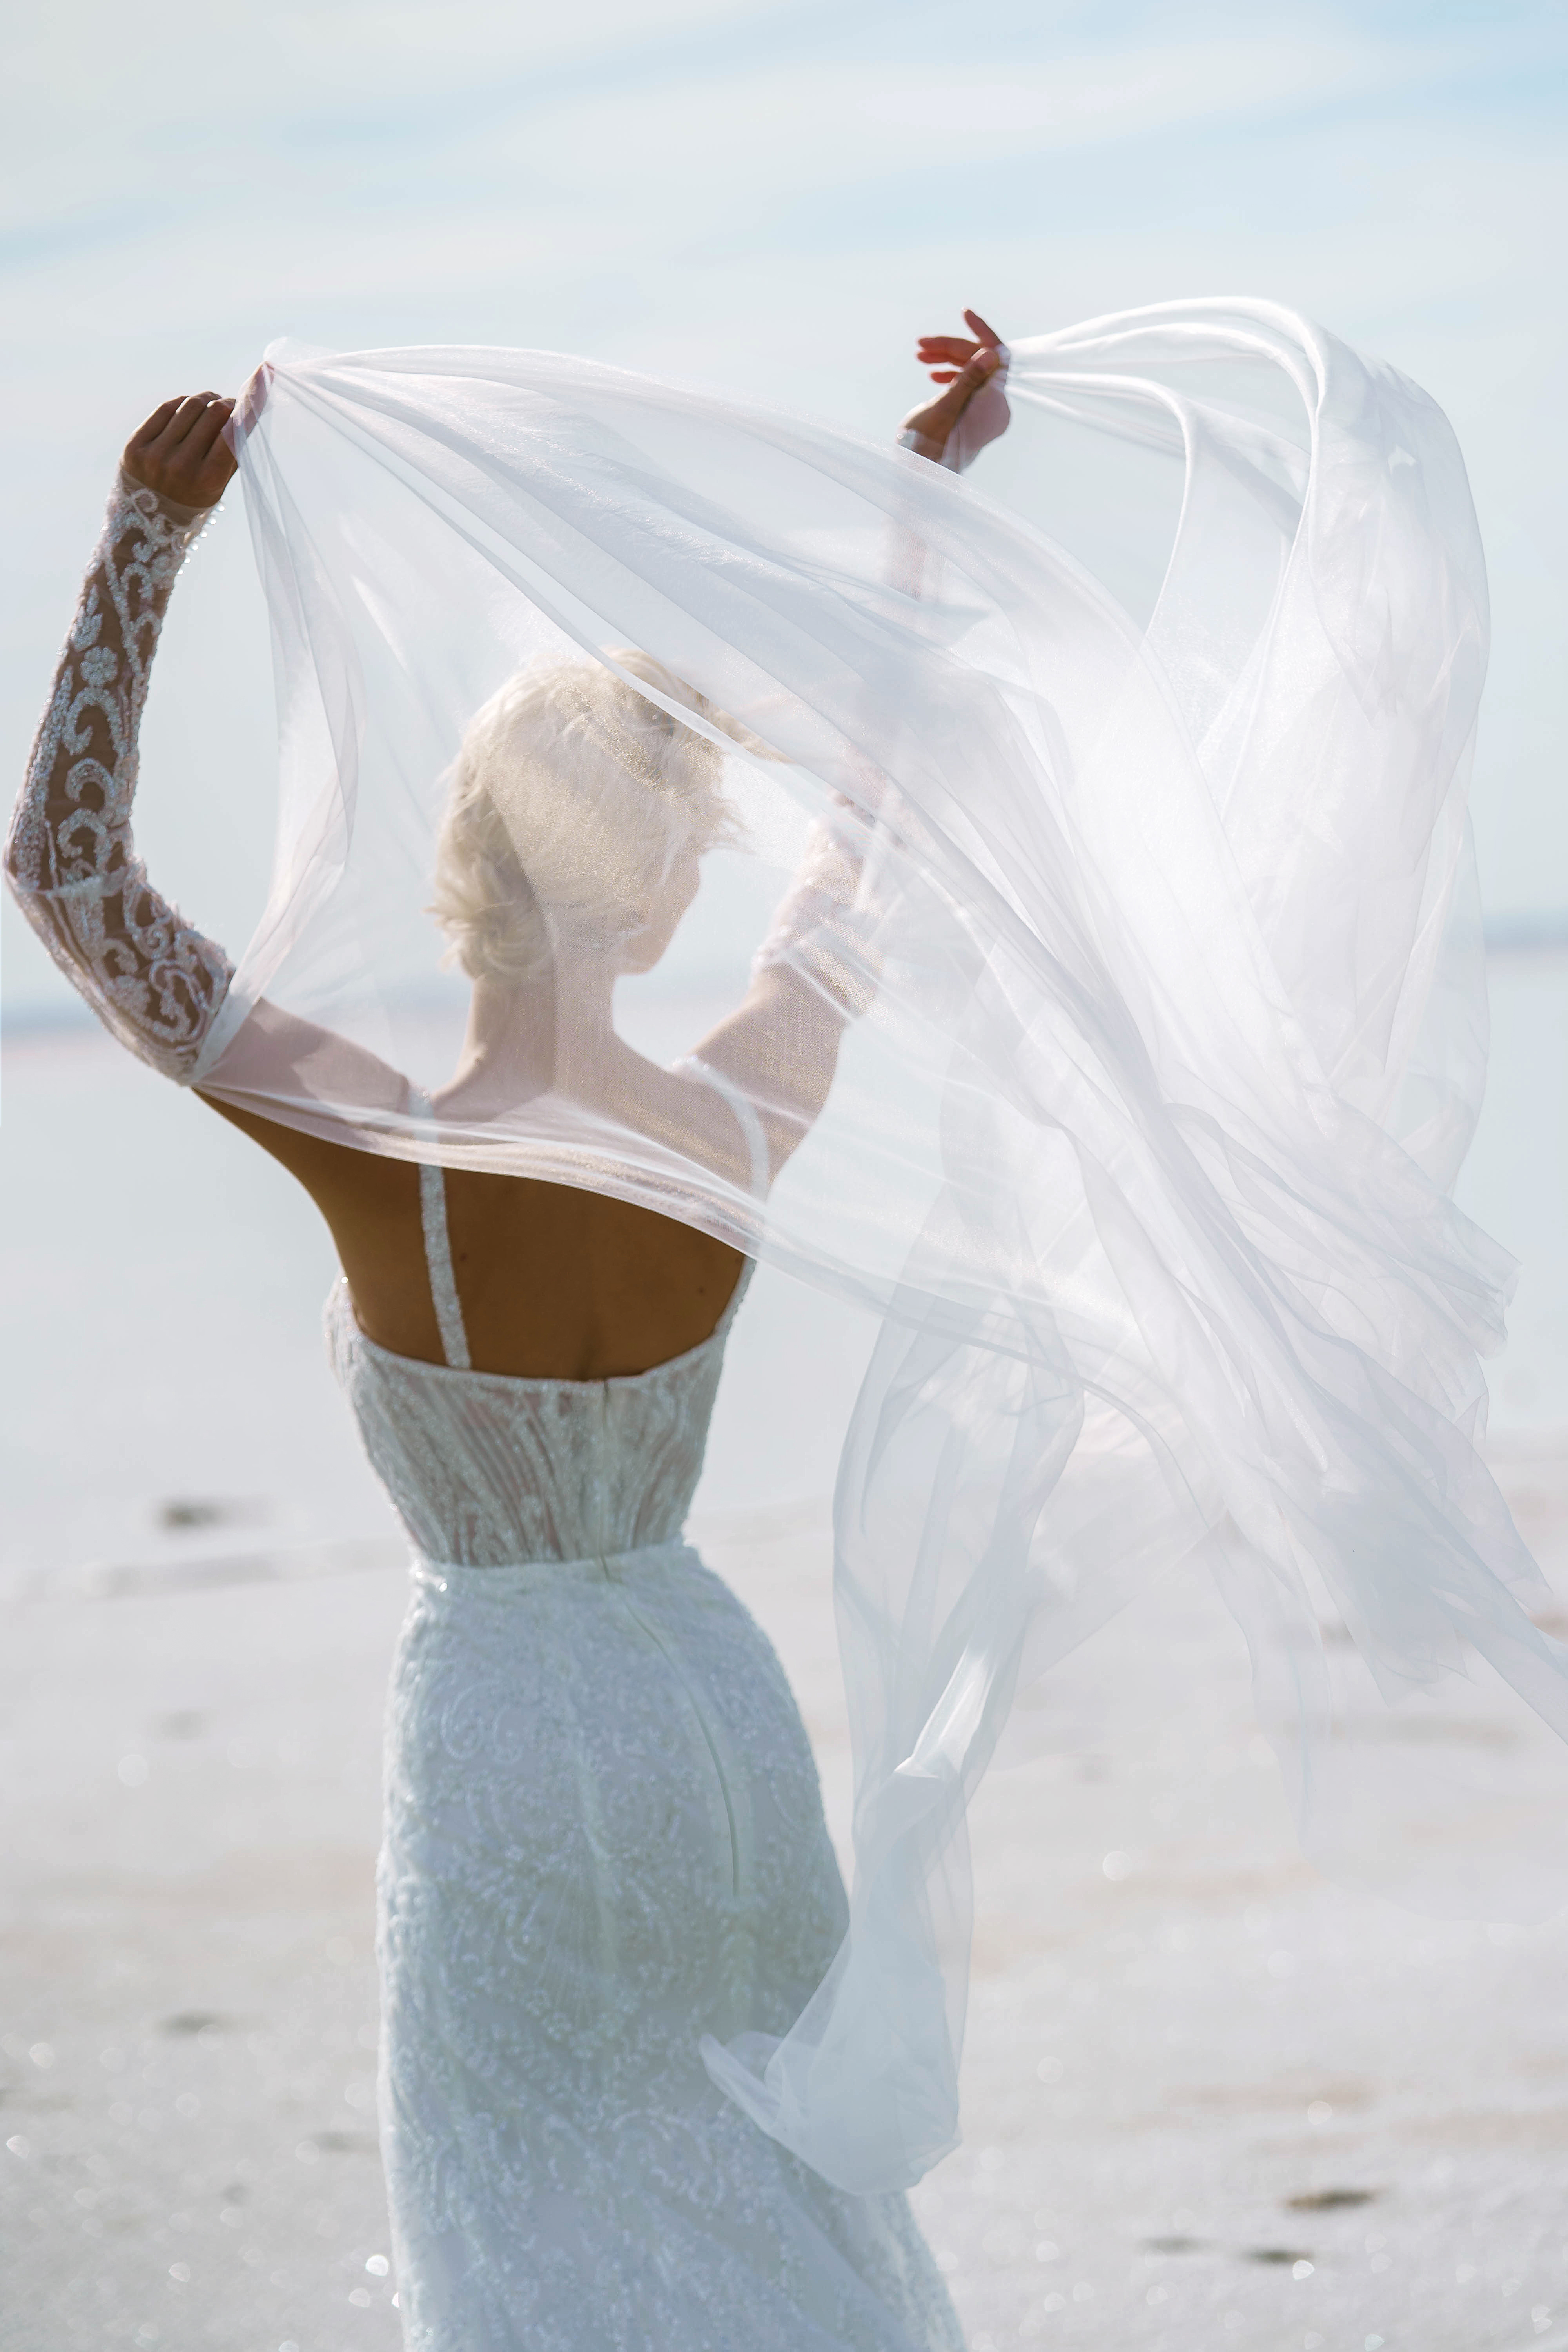 Купить свадебное платье «Джанин» Наталья Романова из коллекции Блаш 2022 года в салоне «Мэри Трюфель»